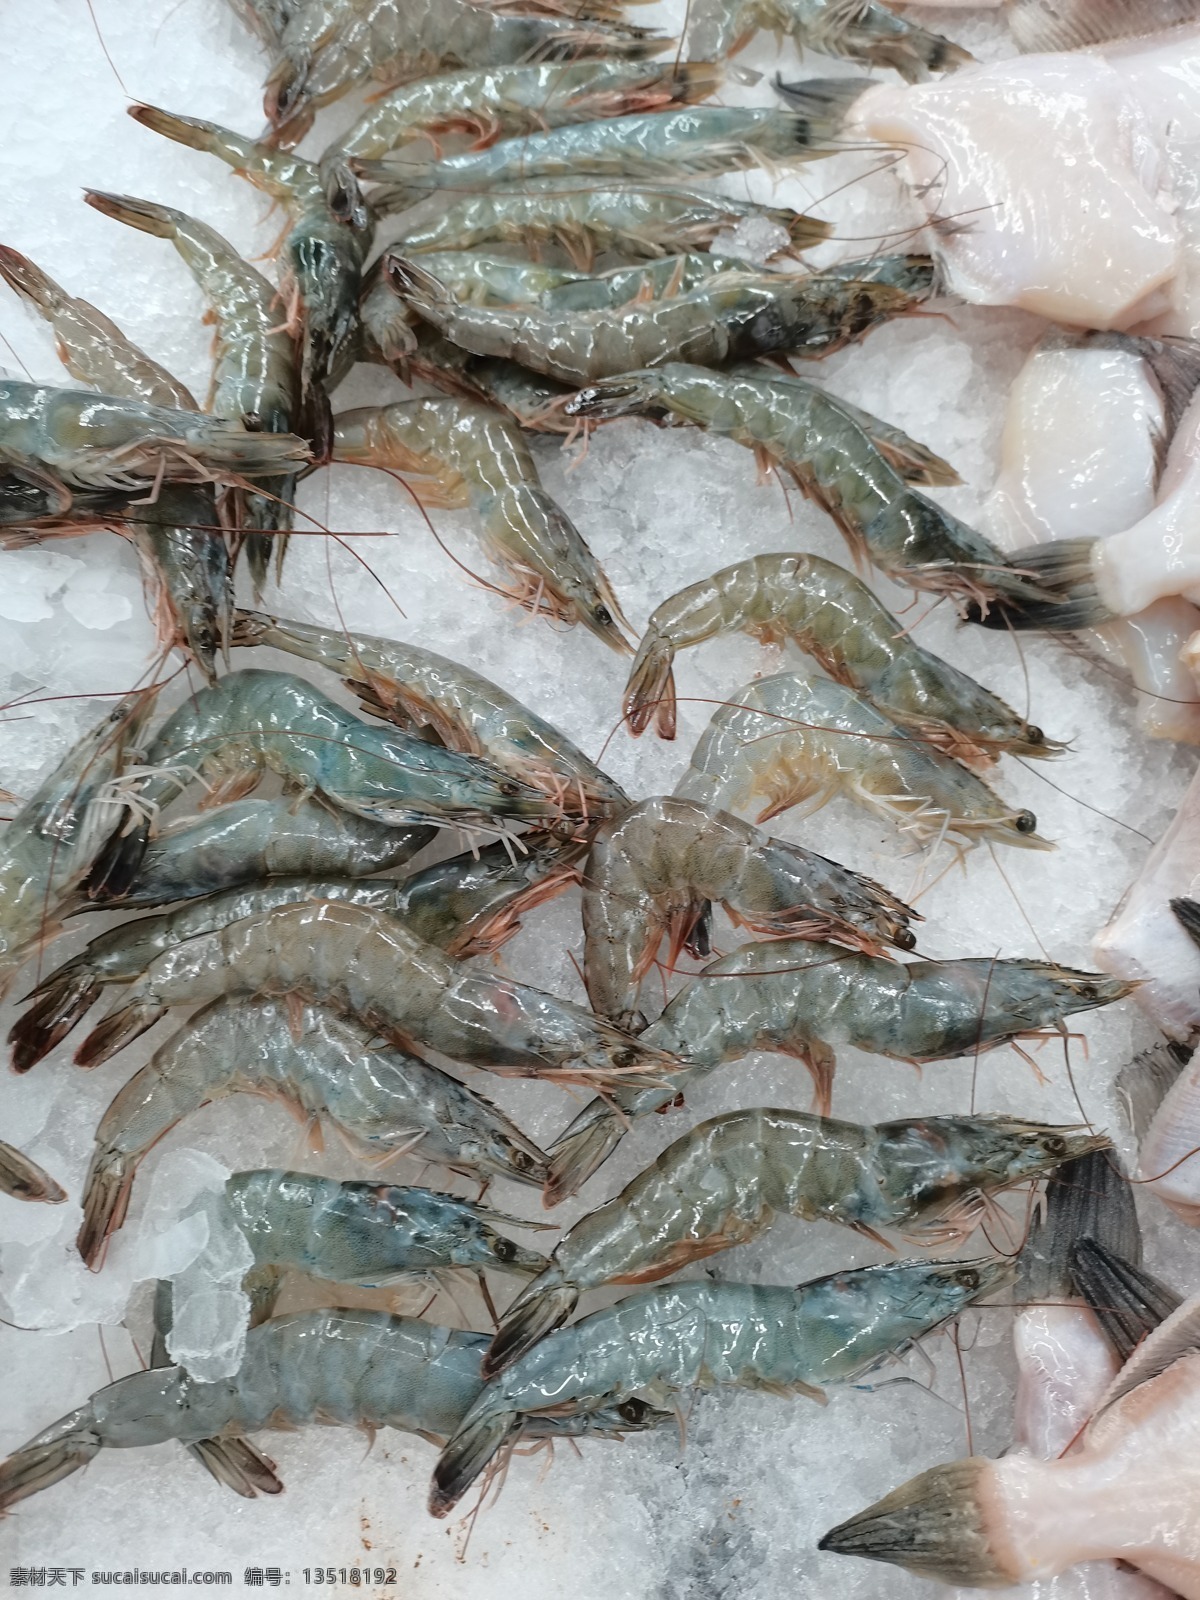 基围虾图片 基围虾 海洋生物 海鲜 虾类 超市 售卖 生物世界 鱼类